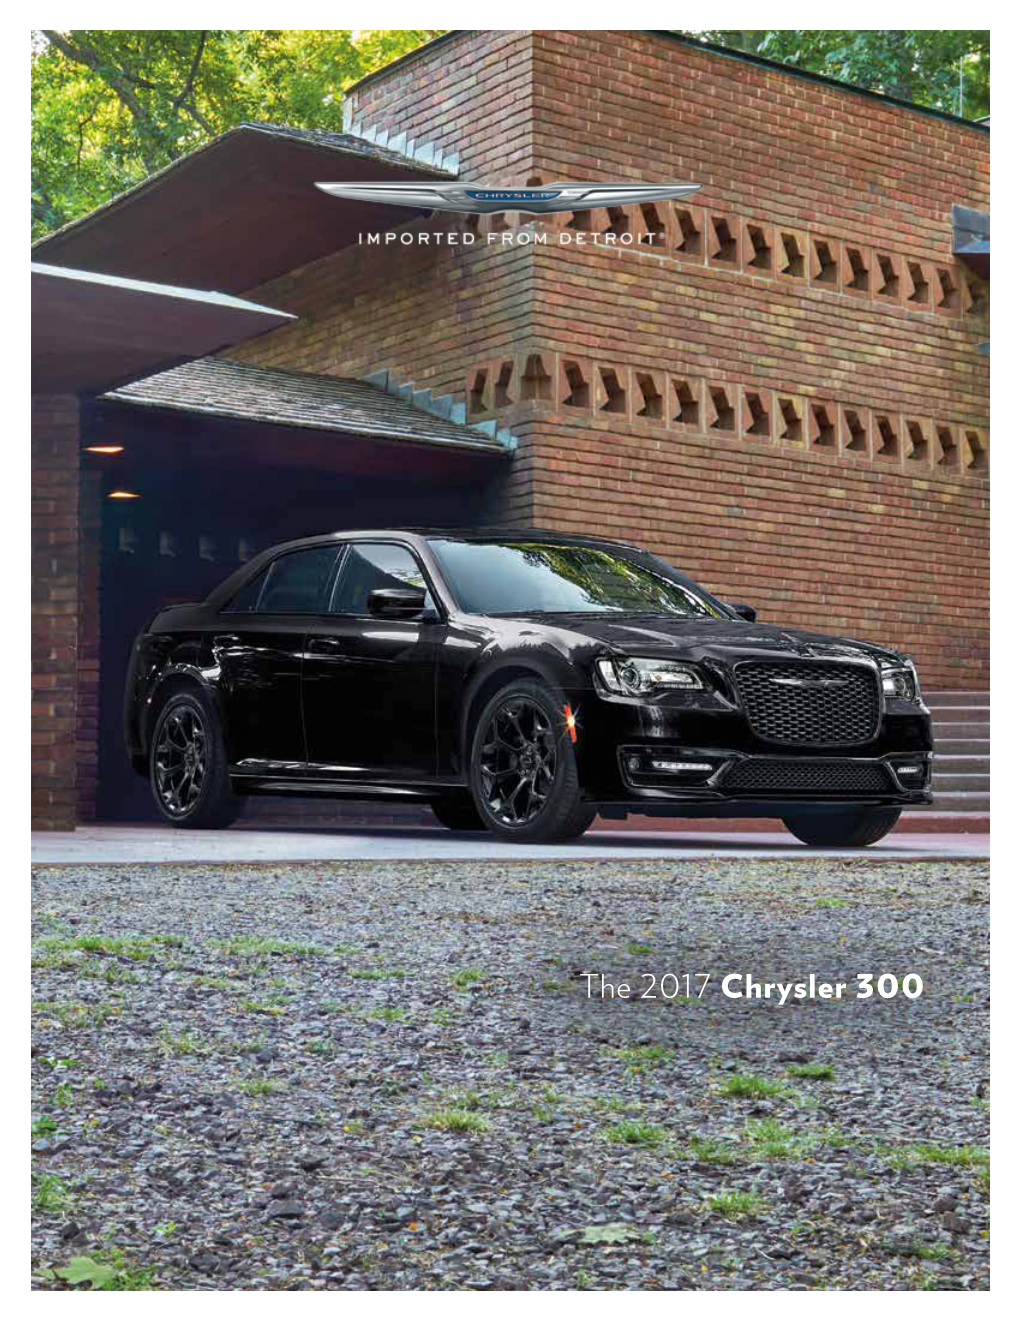 The 2017 Chrysler